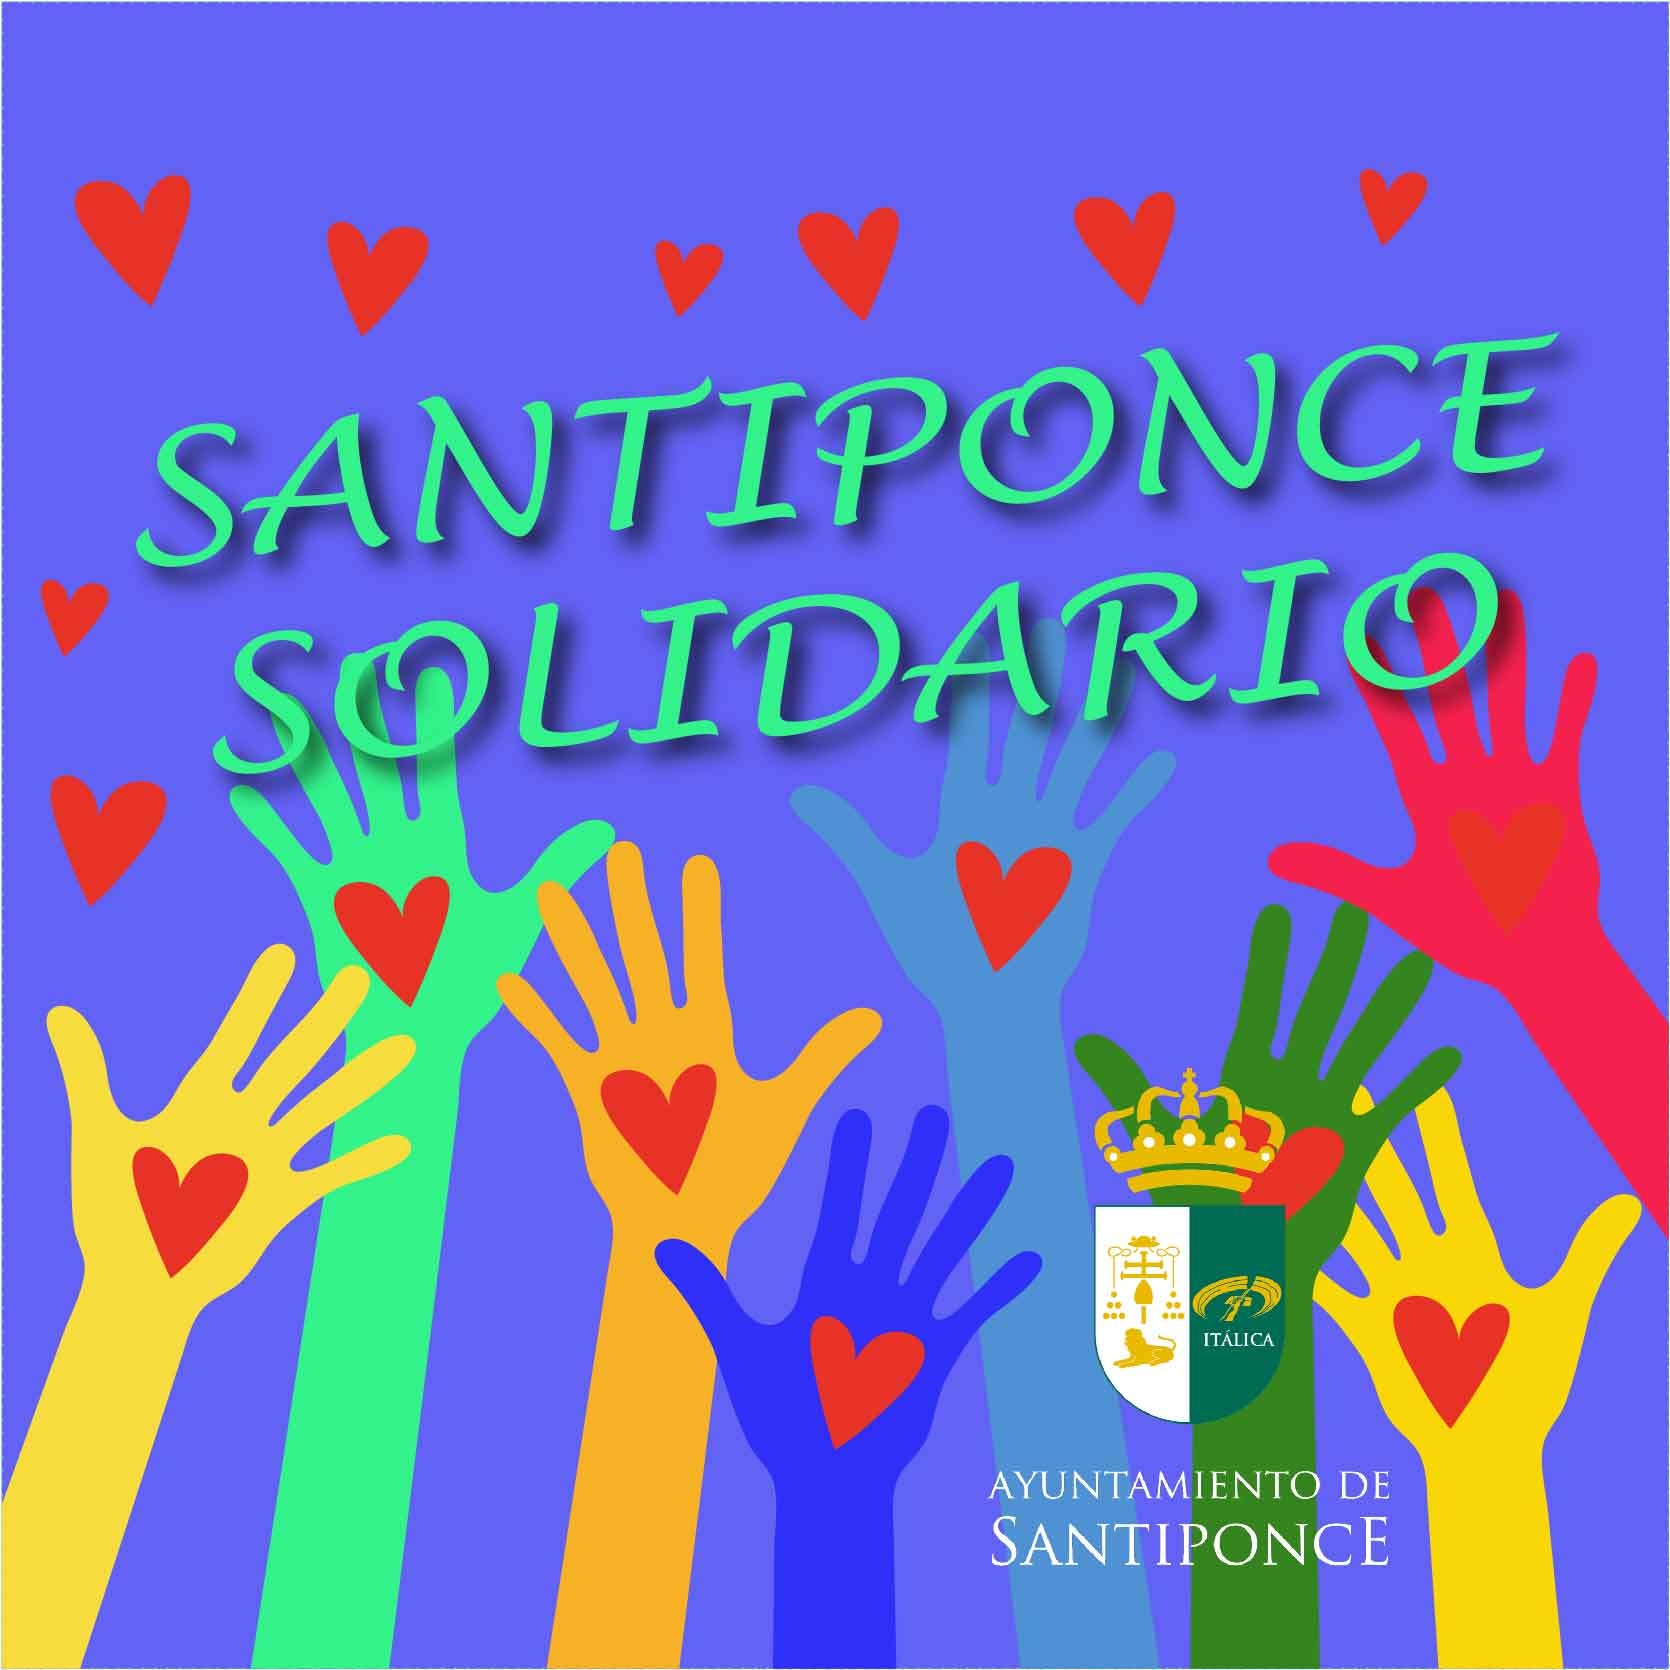 santiponce solidario 20032020